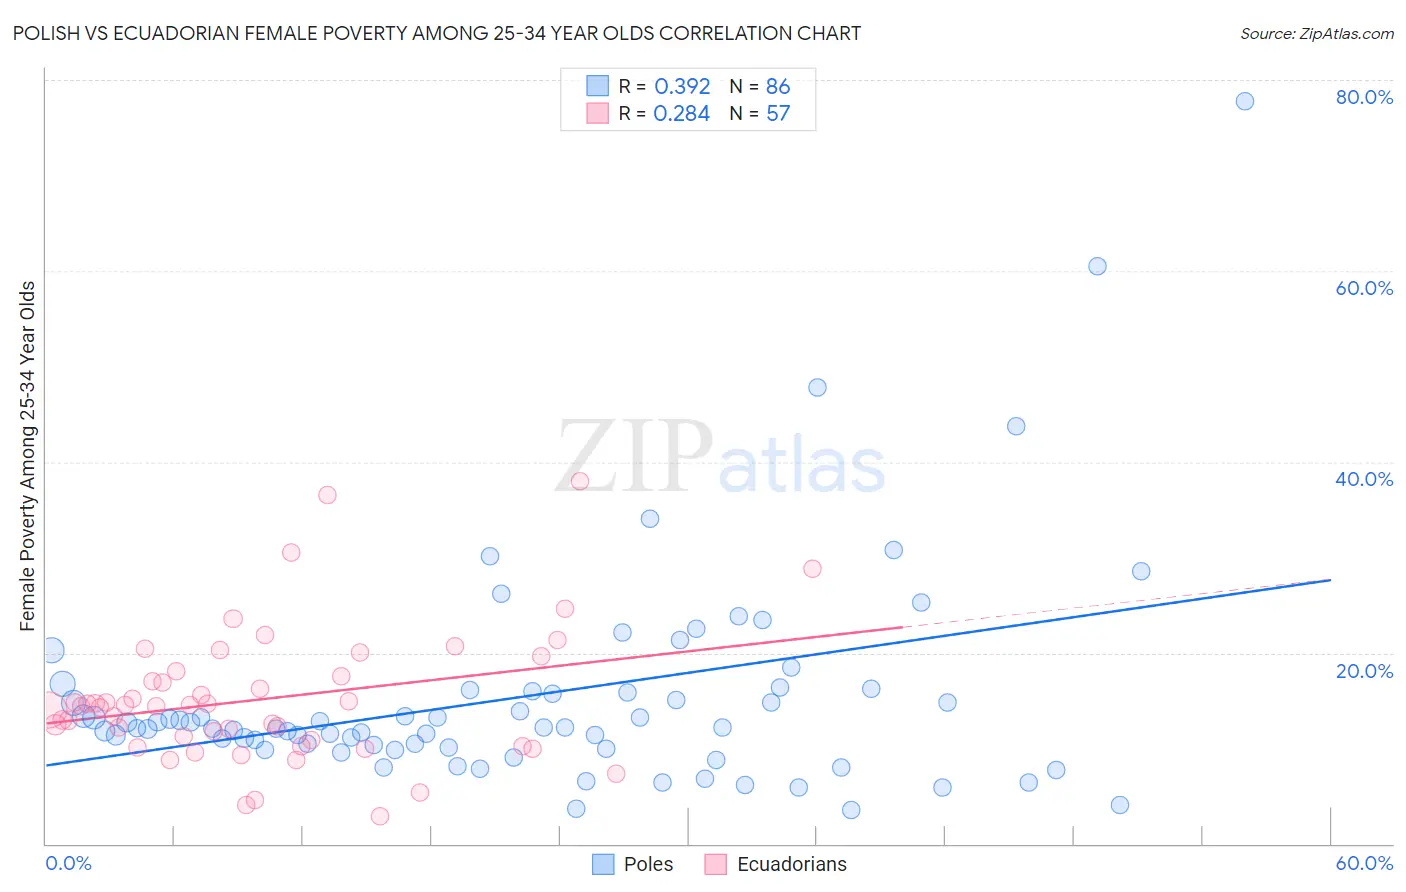 Polish vs Ecuadorian Female Poverty Among 25-34 Year Olds